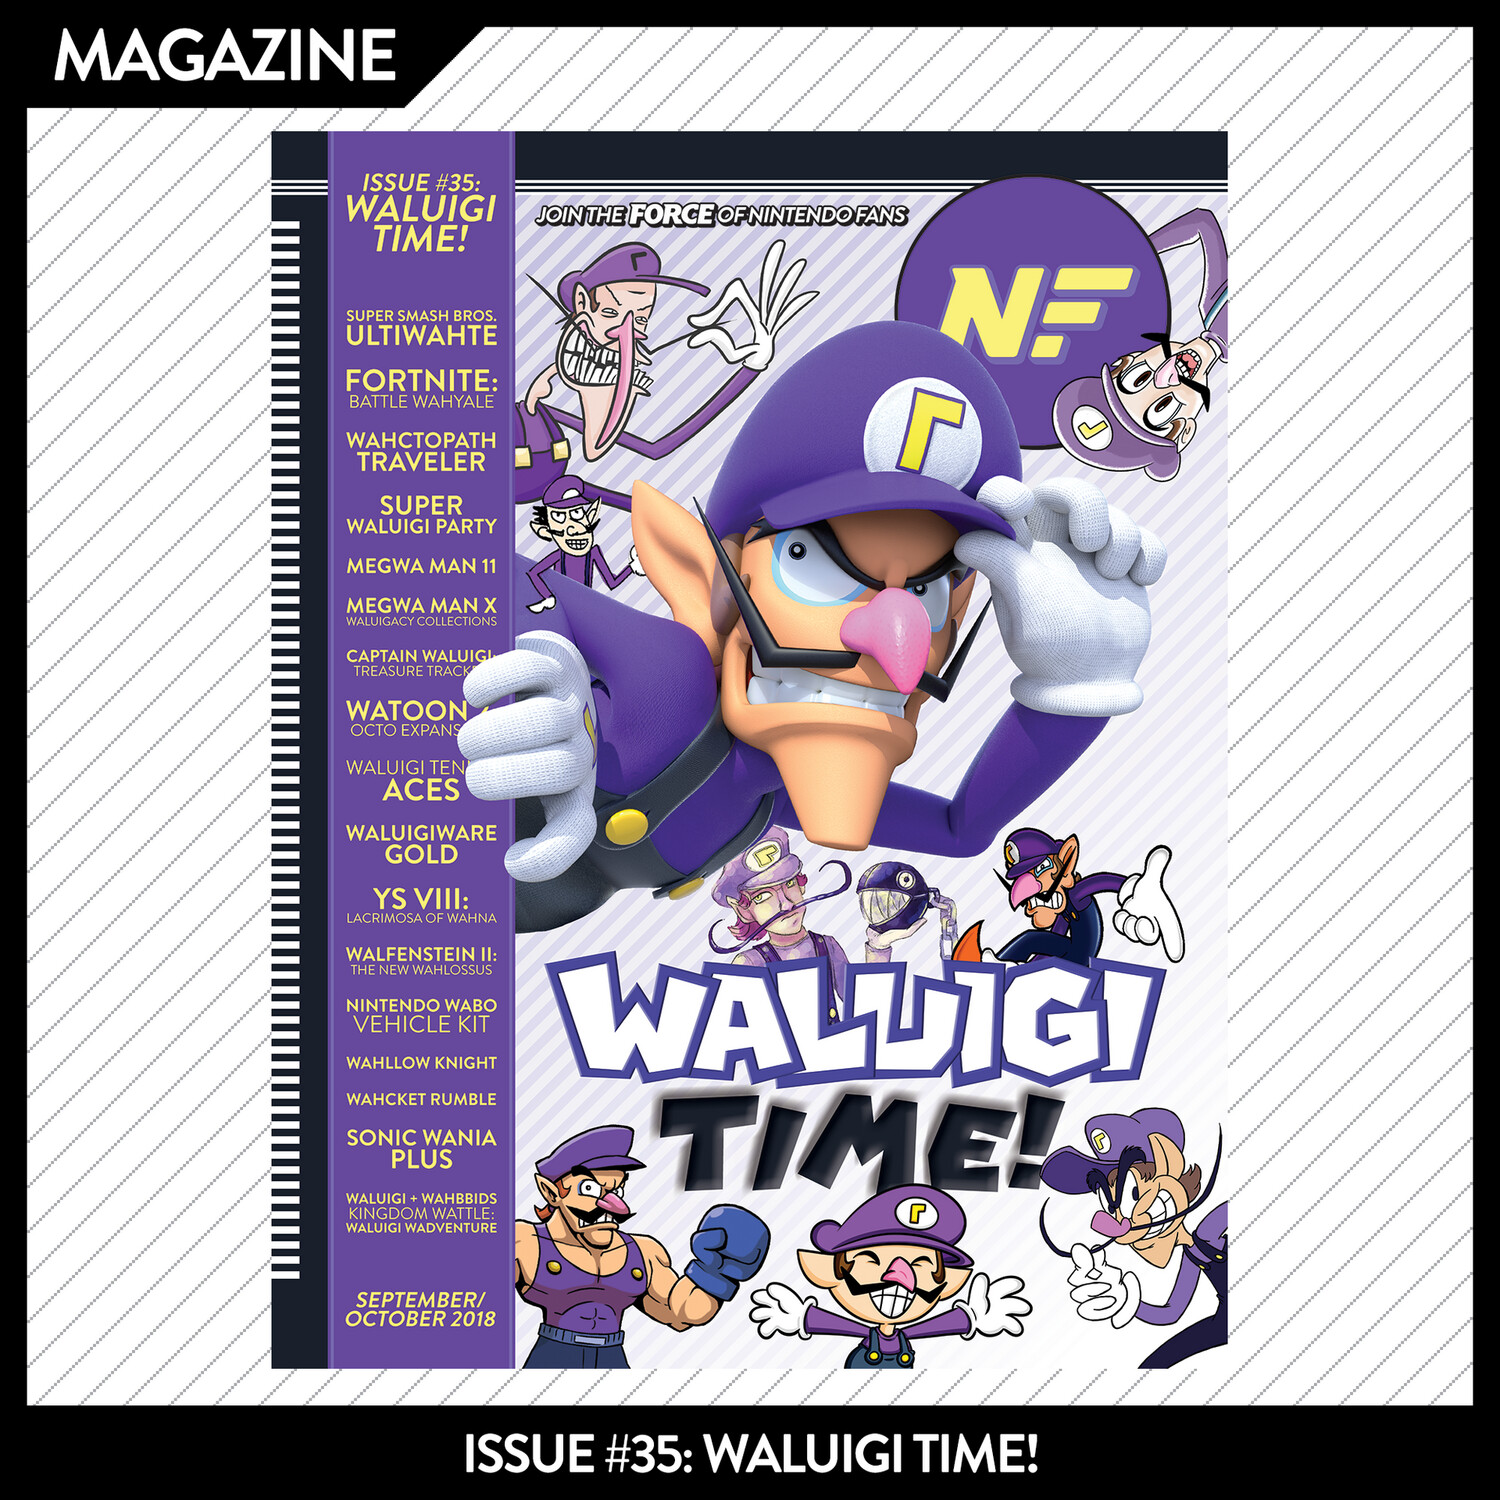 Issue #35: Waluigi Time! – September/October 2018